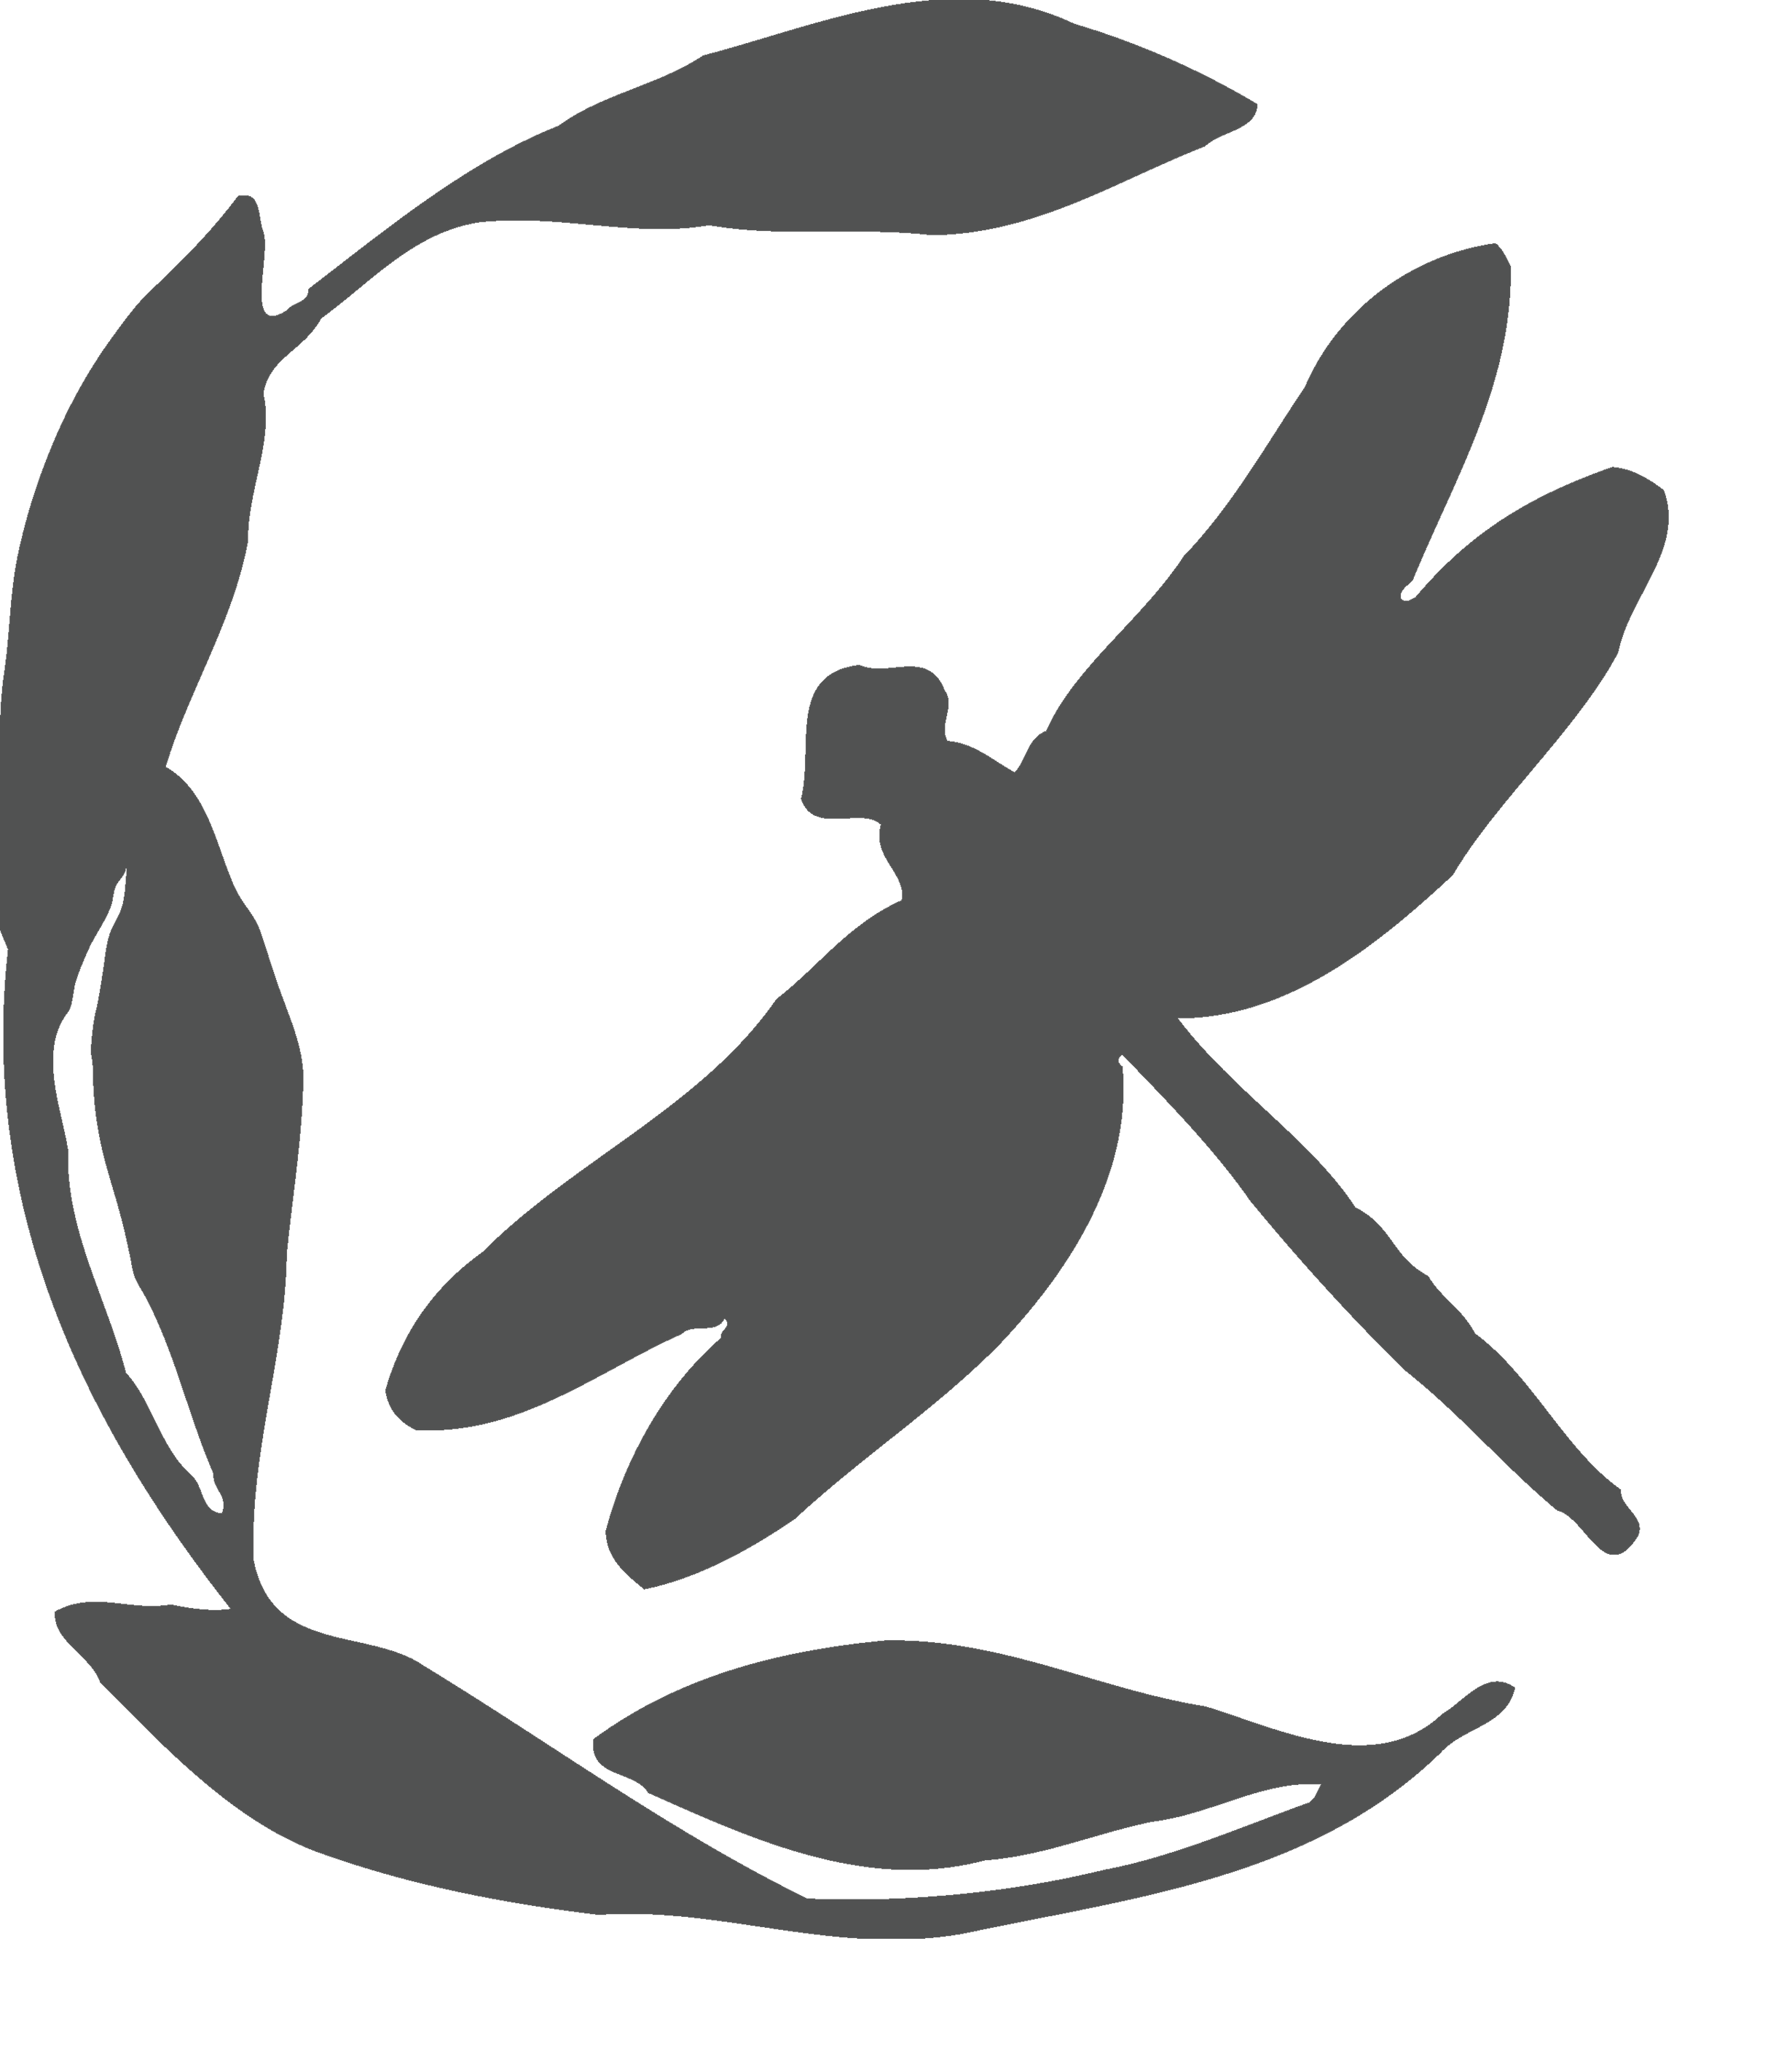 Commission biologique du Canada logo